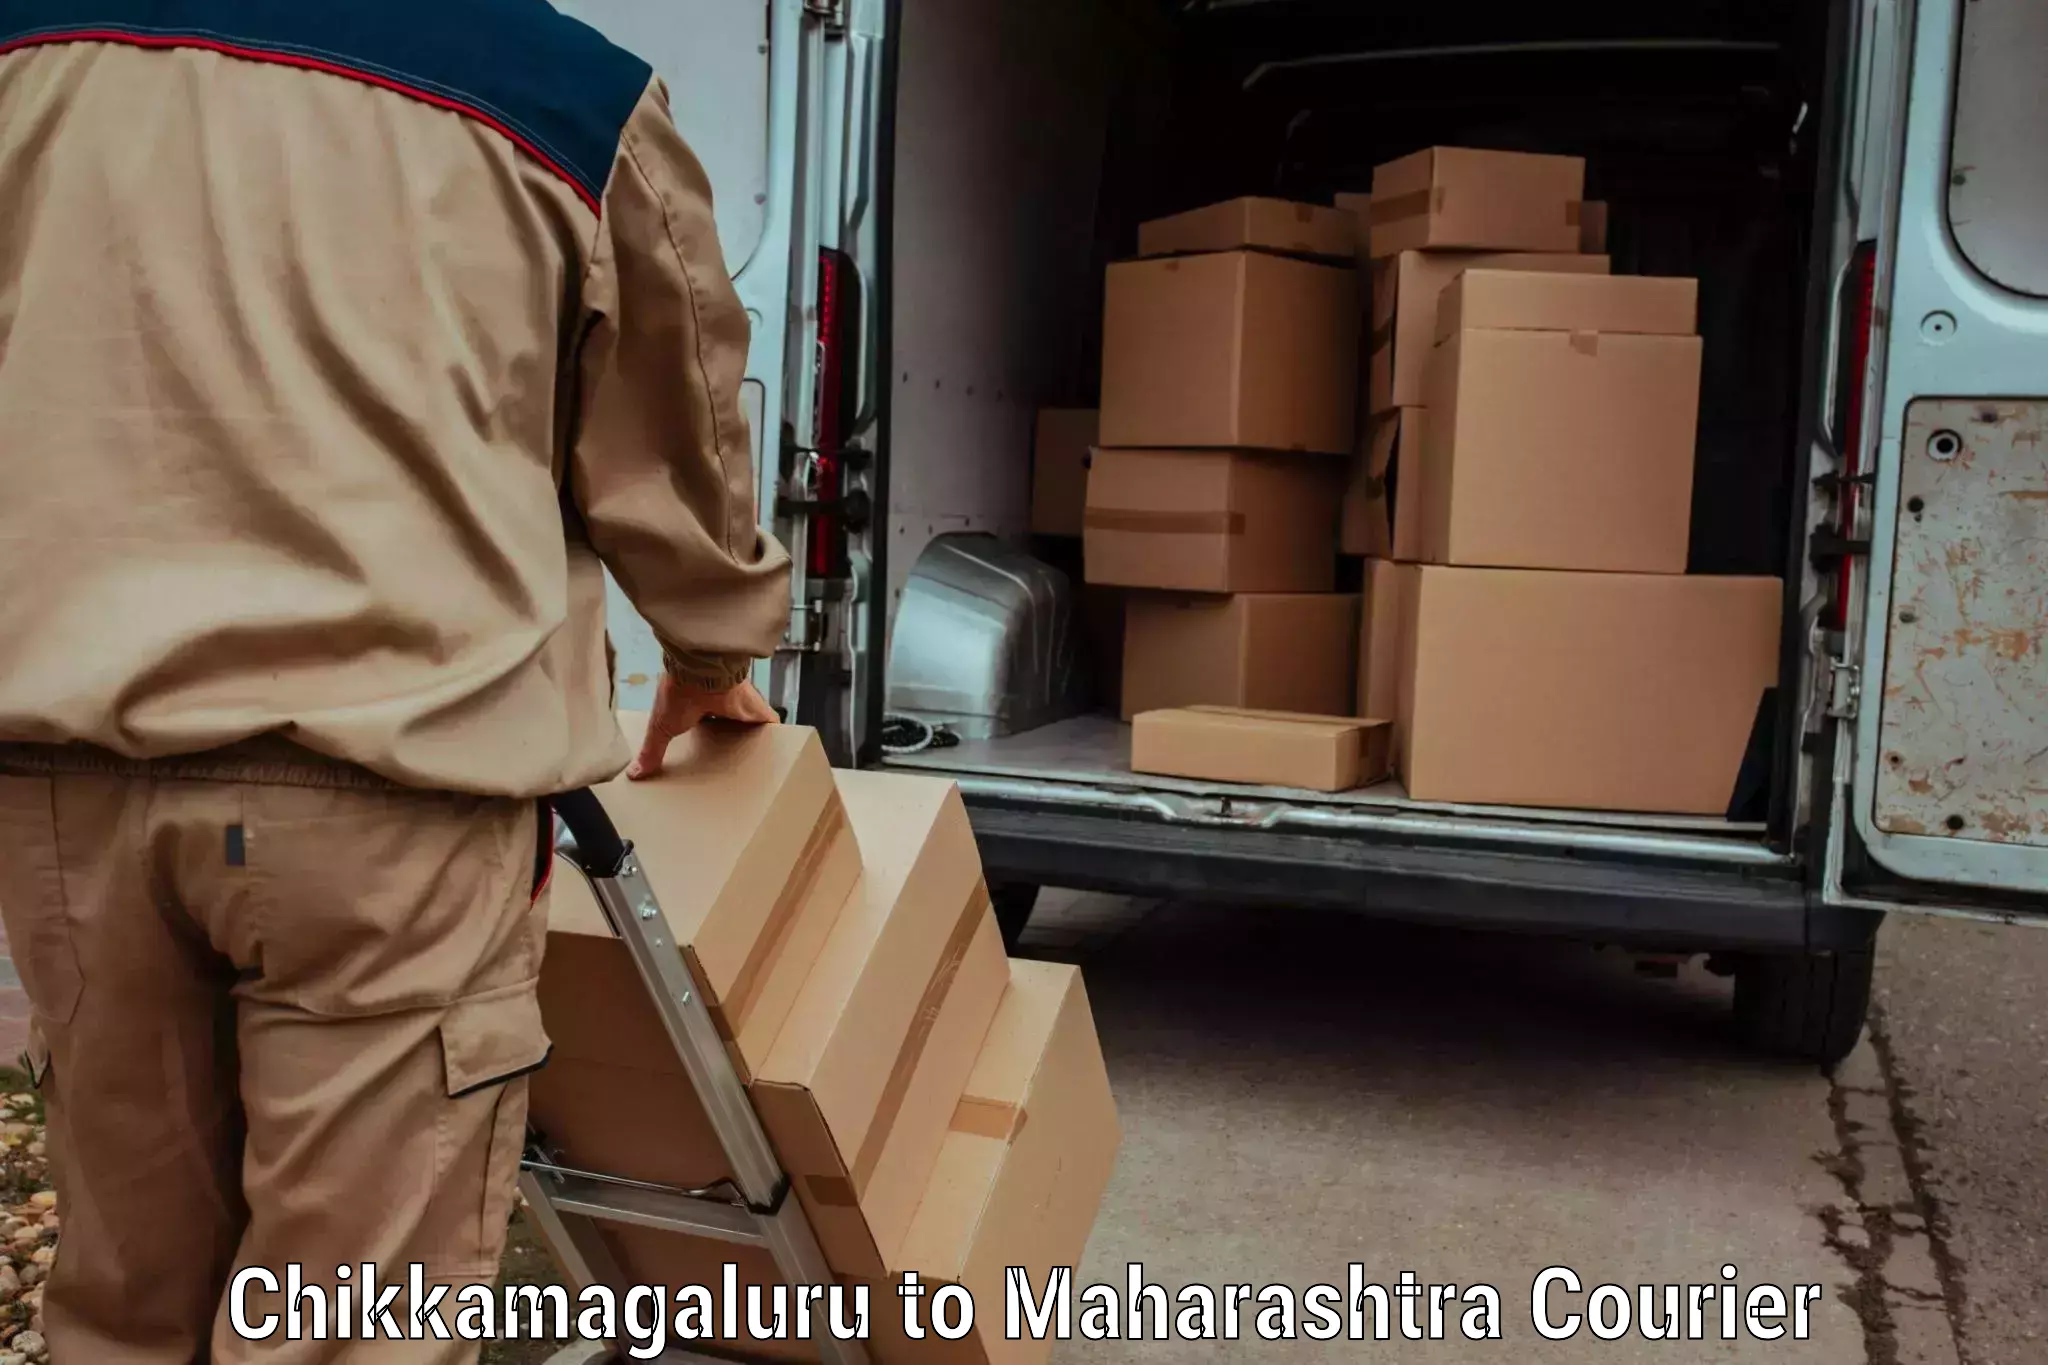 Luggage transit service Chikkamagaluru to Maharashtra